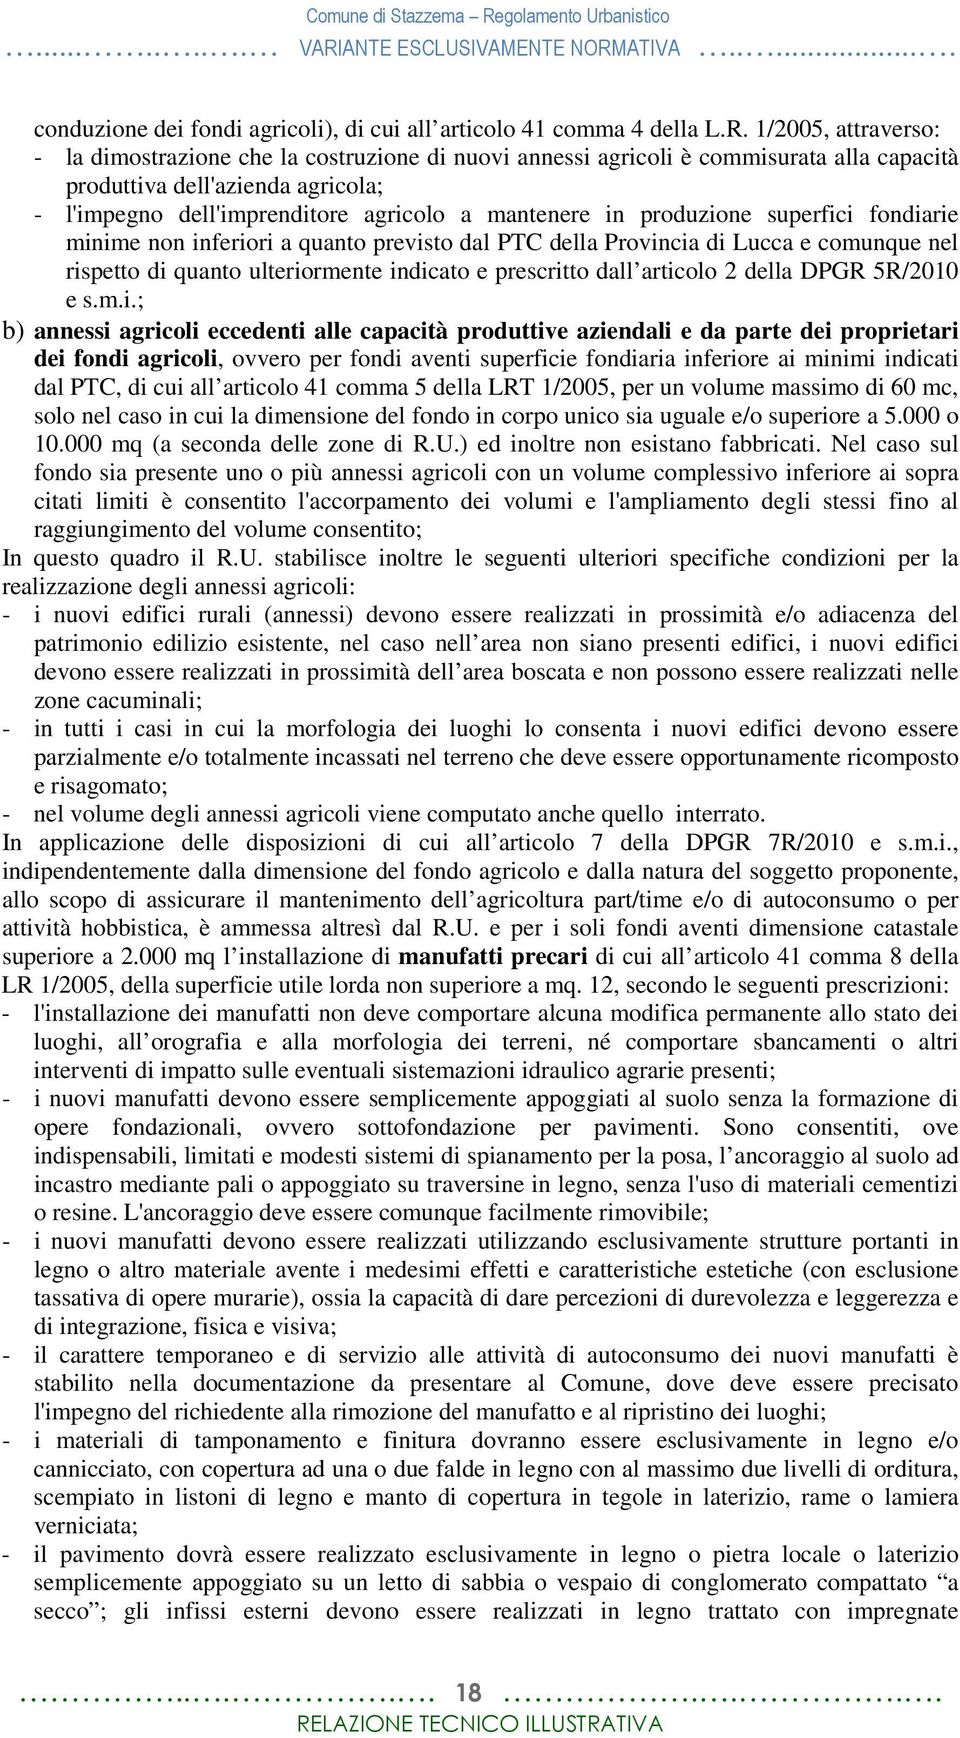 produzione superfici fondiarie minime non inferiori a quanto previsto dal PTC della Provincia di Lucca e comunque nel rispetto di quanto ulteriormente indicato e prescritto dall articolo 2 della DPGR